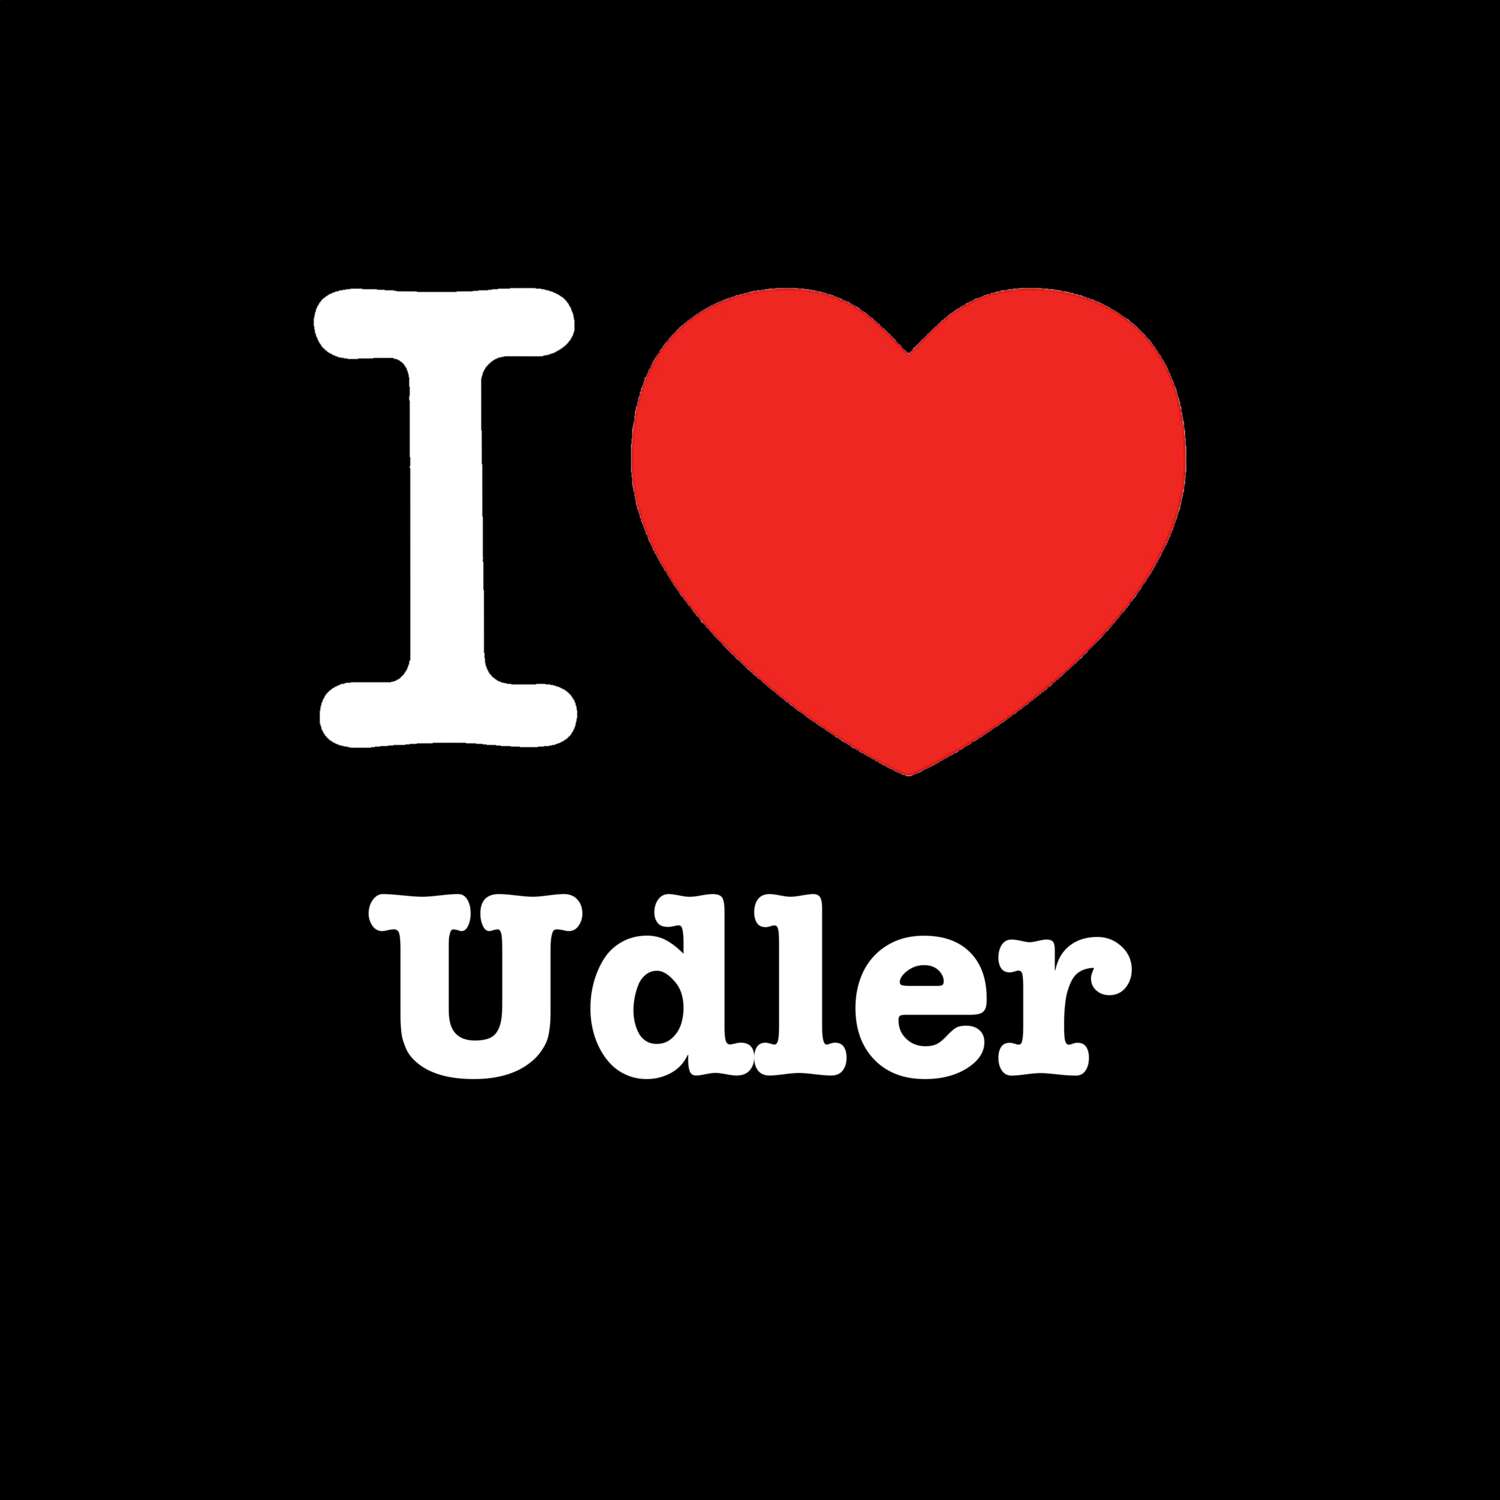 Udler T-Shirt »I love«